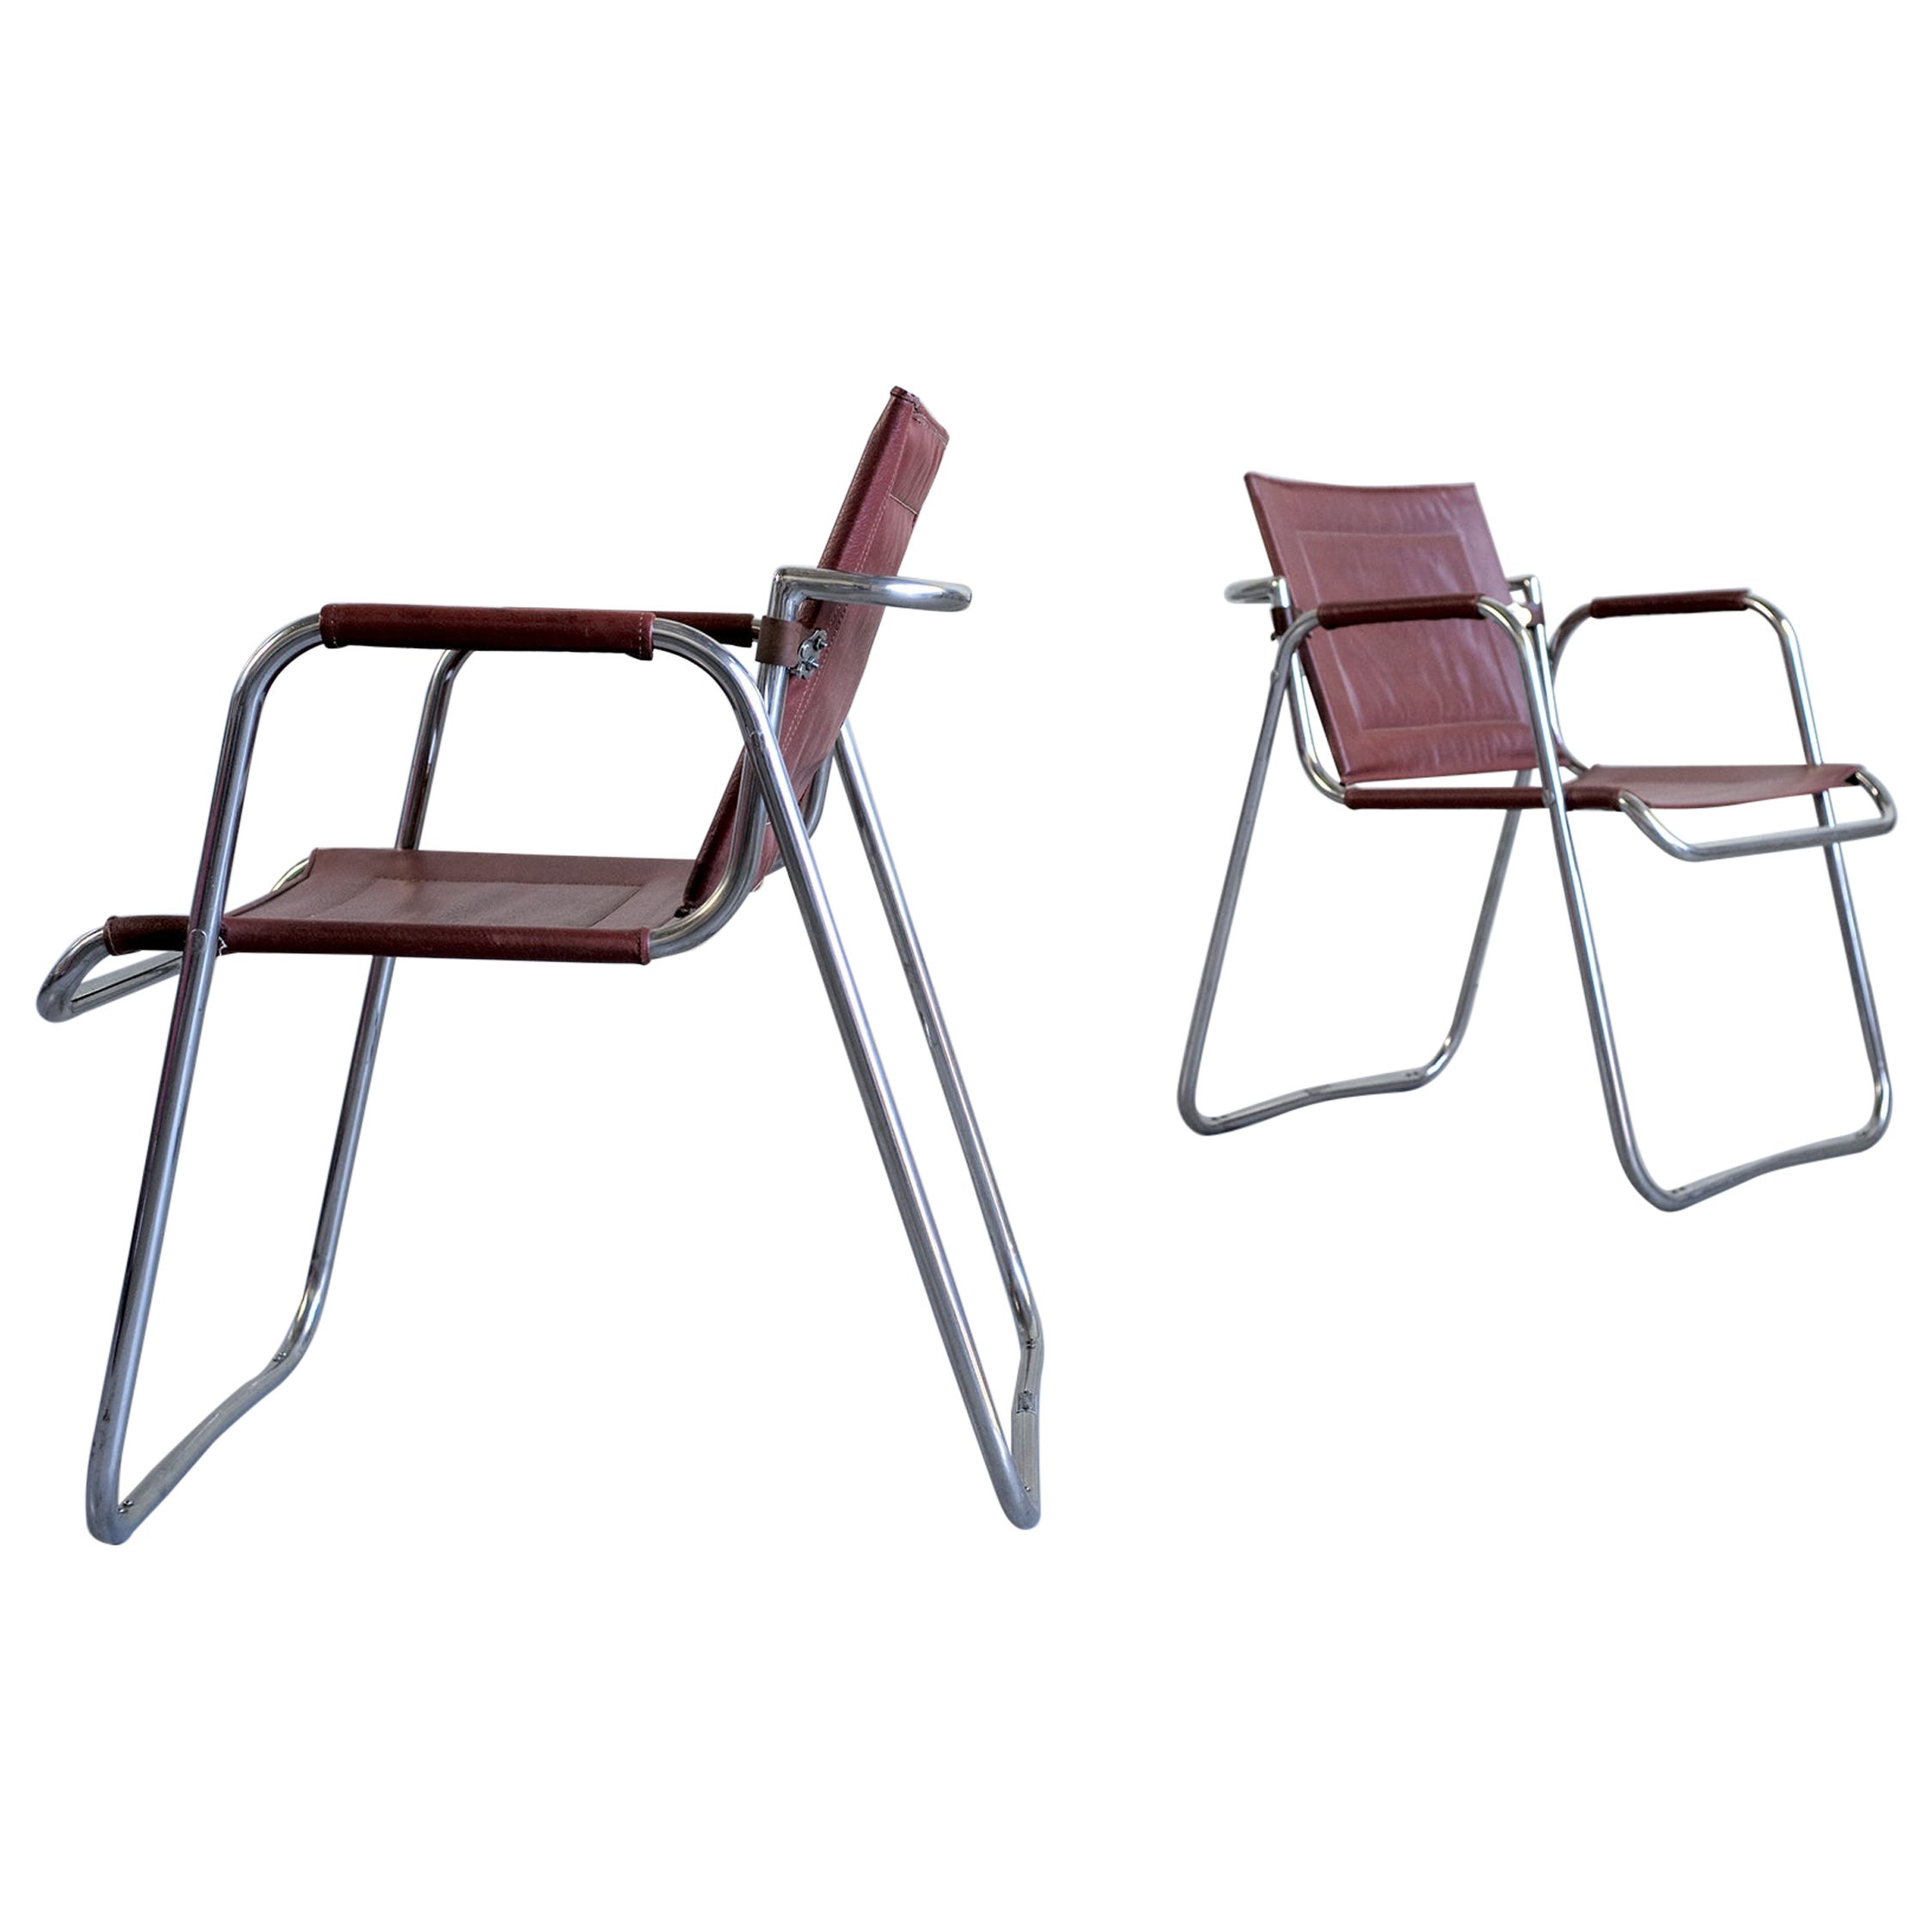 Jacques Hitier, Paire de fauteuils Tubauto, France, 1950